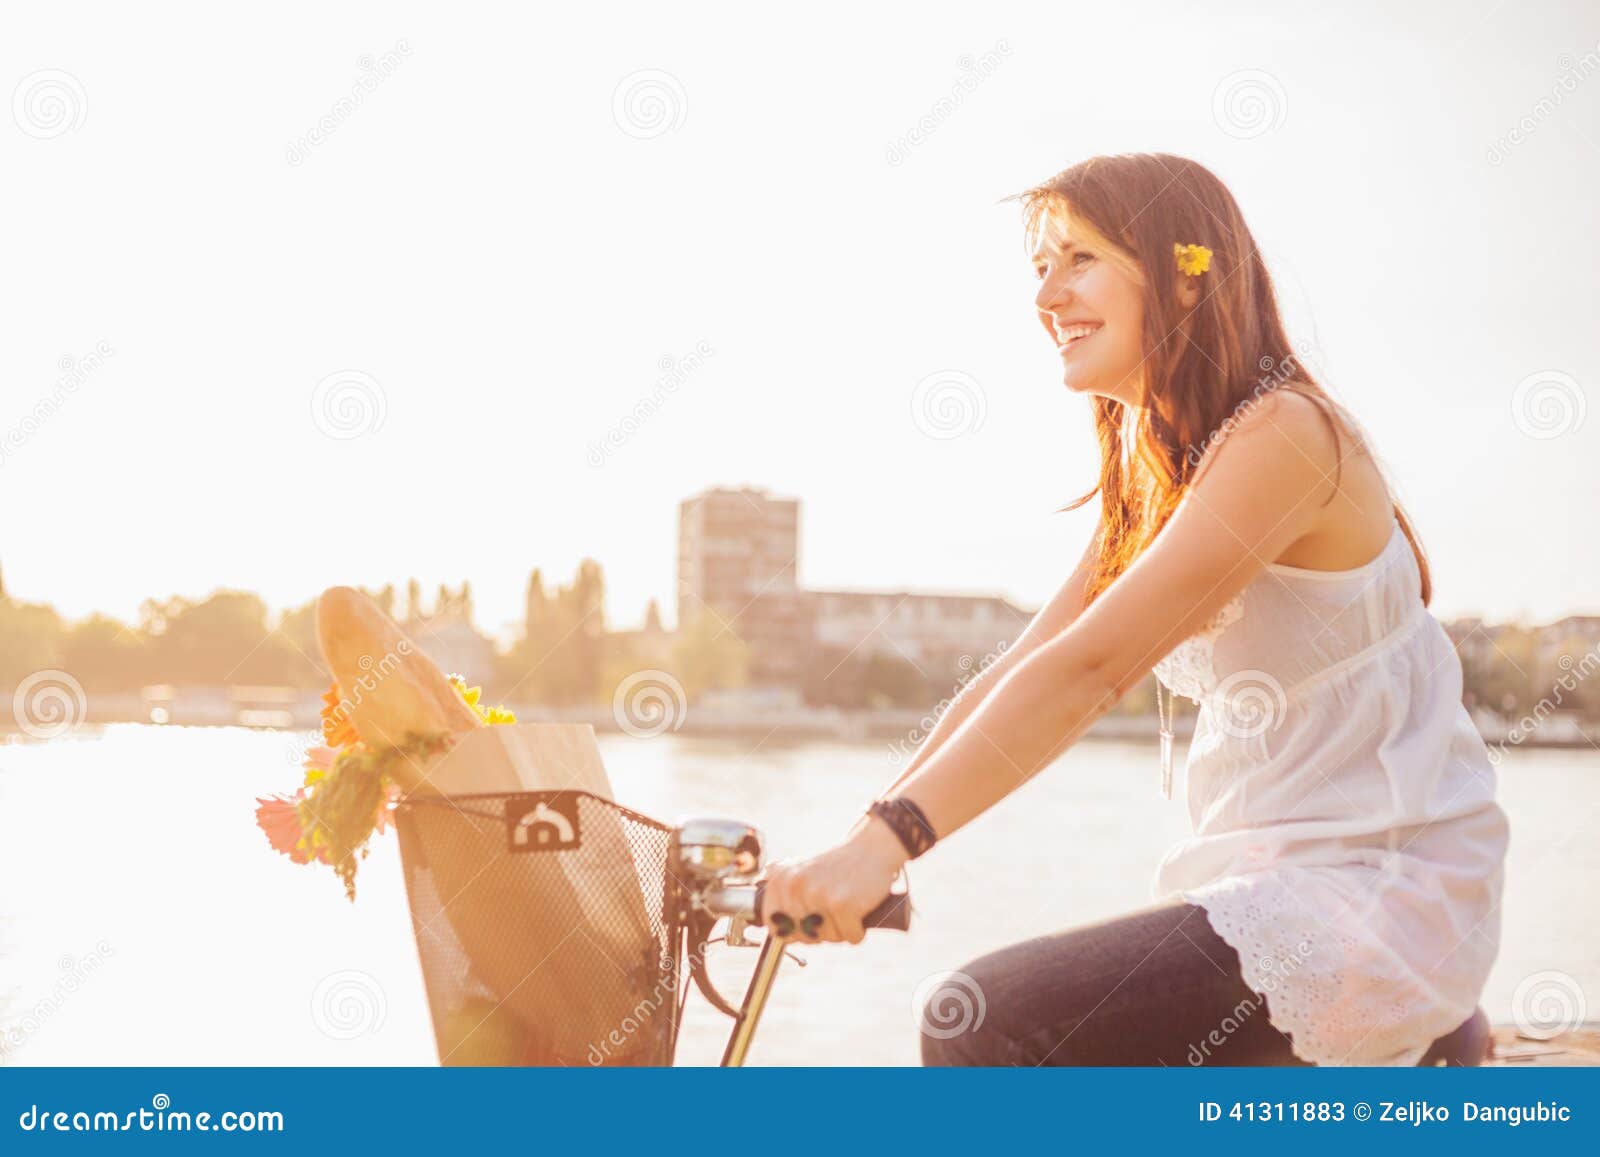 printemps femme avec une bicyclette